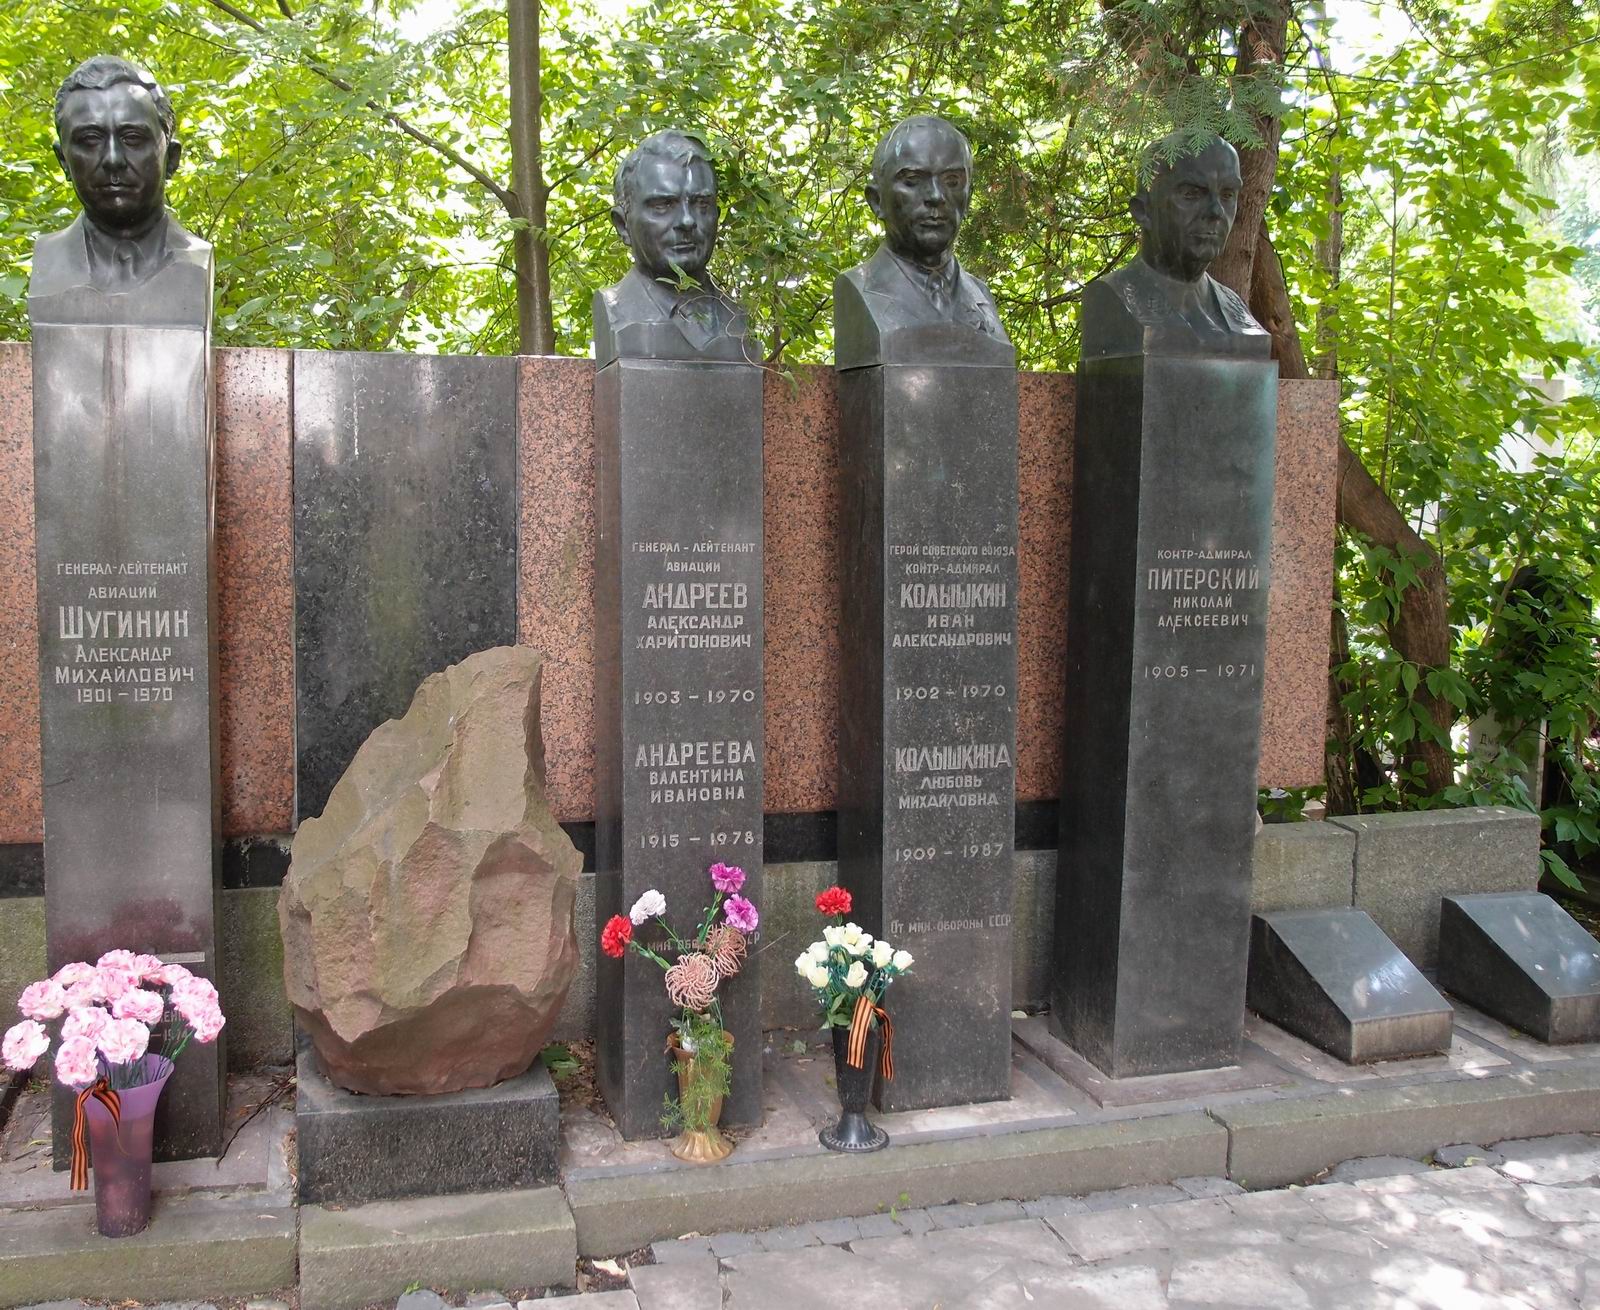 Памятник на могиле Андреева А.Х. (1903–1970), ск. А.Елецкий, арх. П.Ботвинников, на Новодевичьем кладбище (1–43–6). Нажмите левую кнопку мыши чтобы увидеть комплекс полностью.